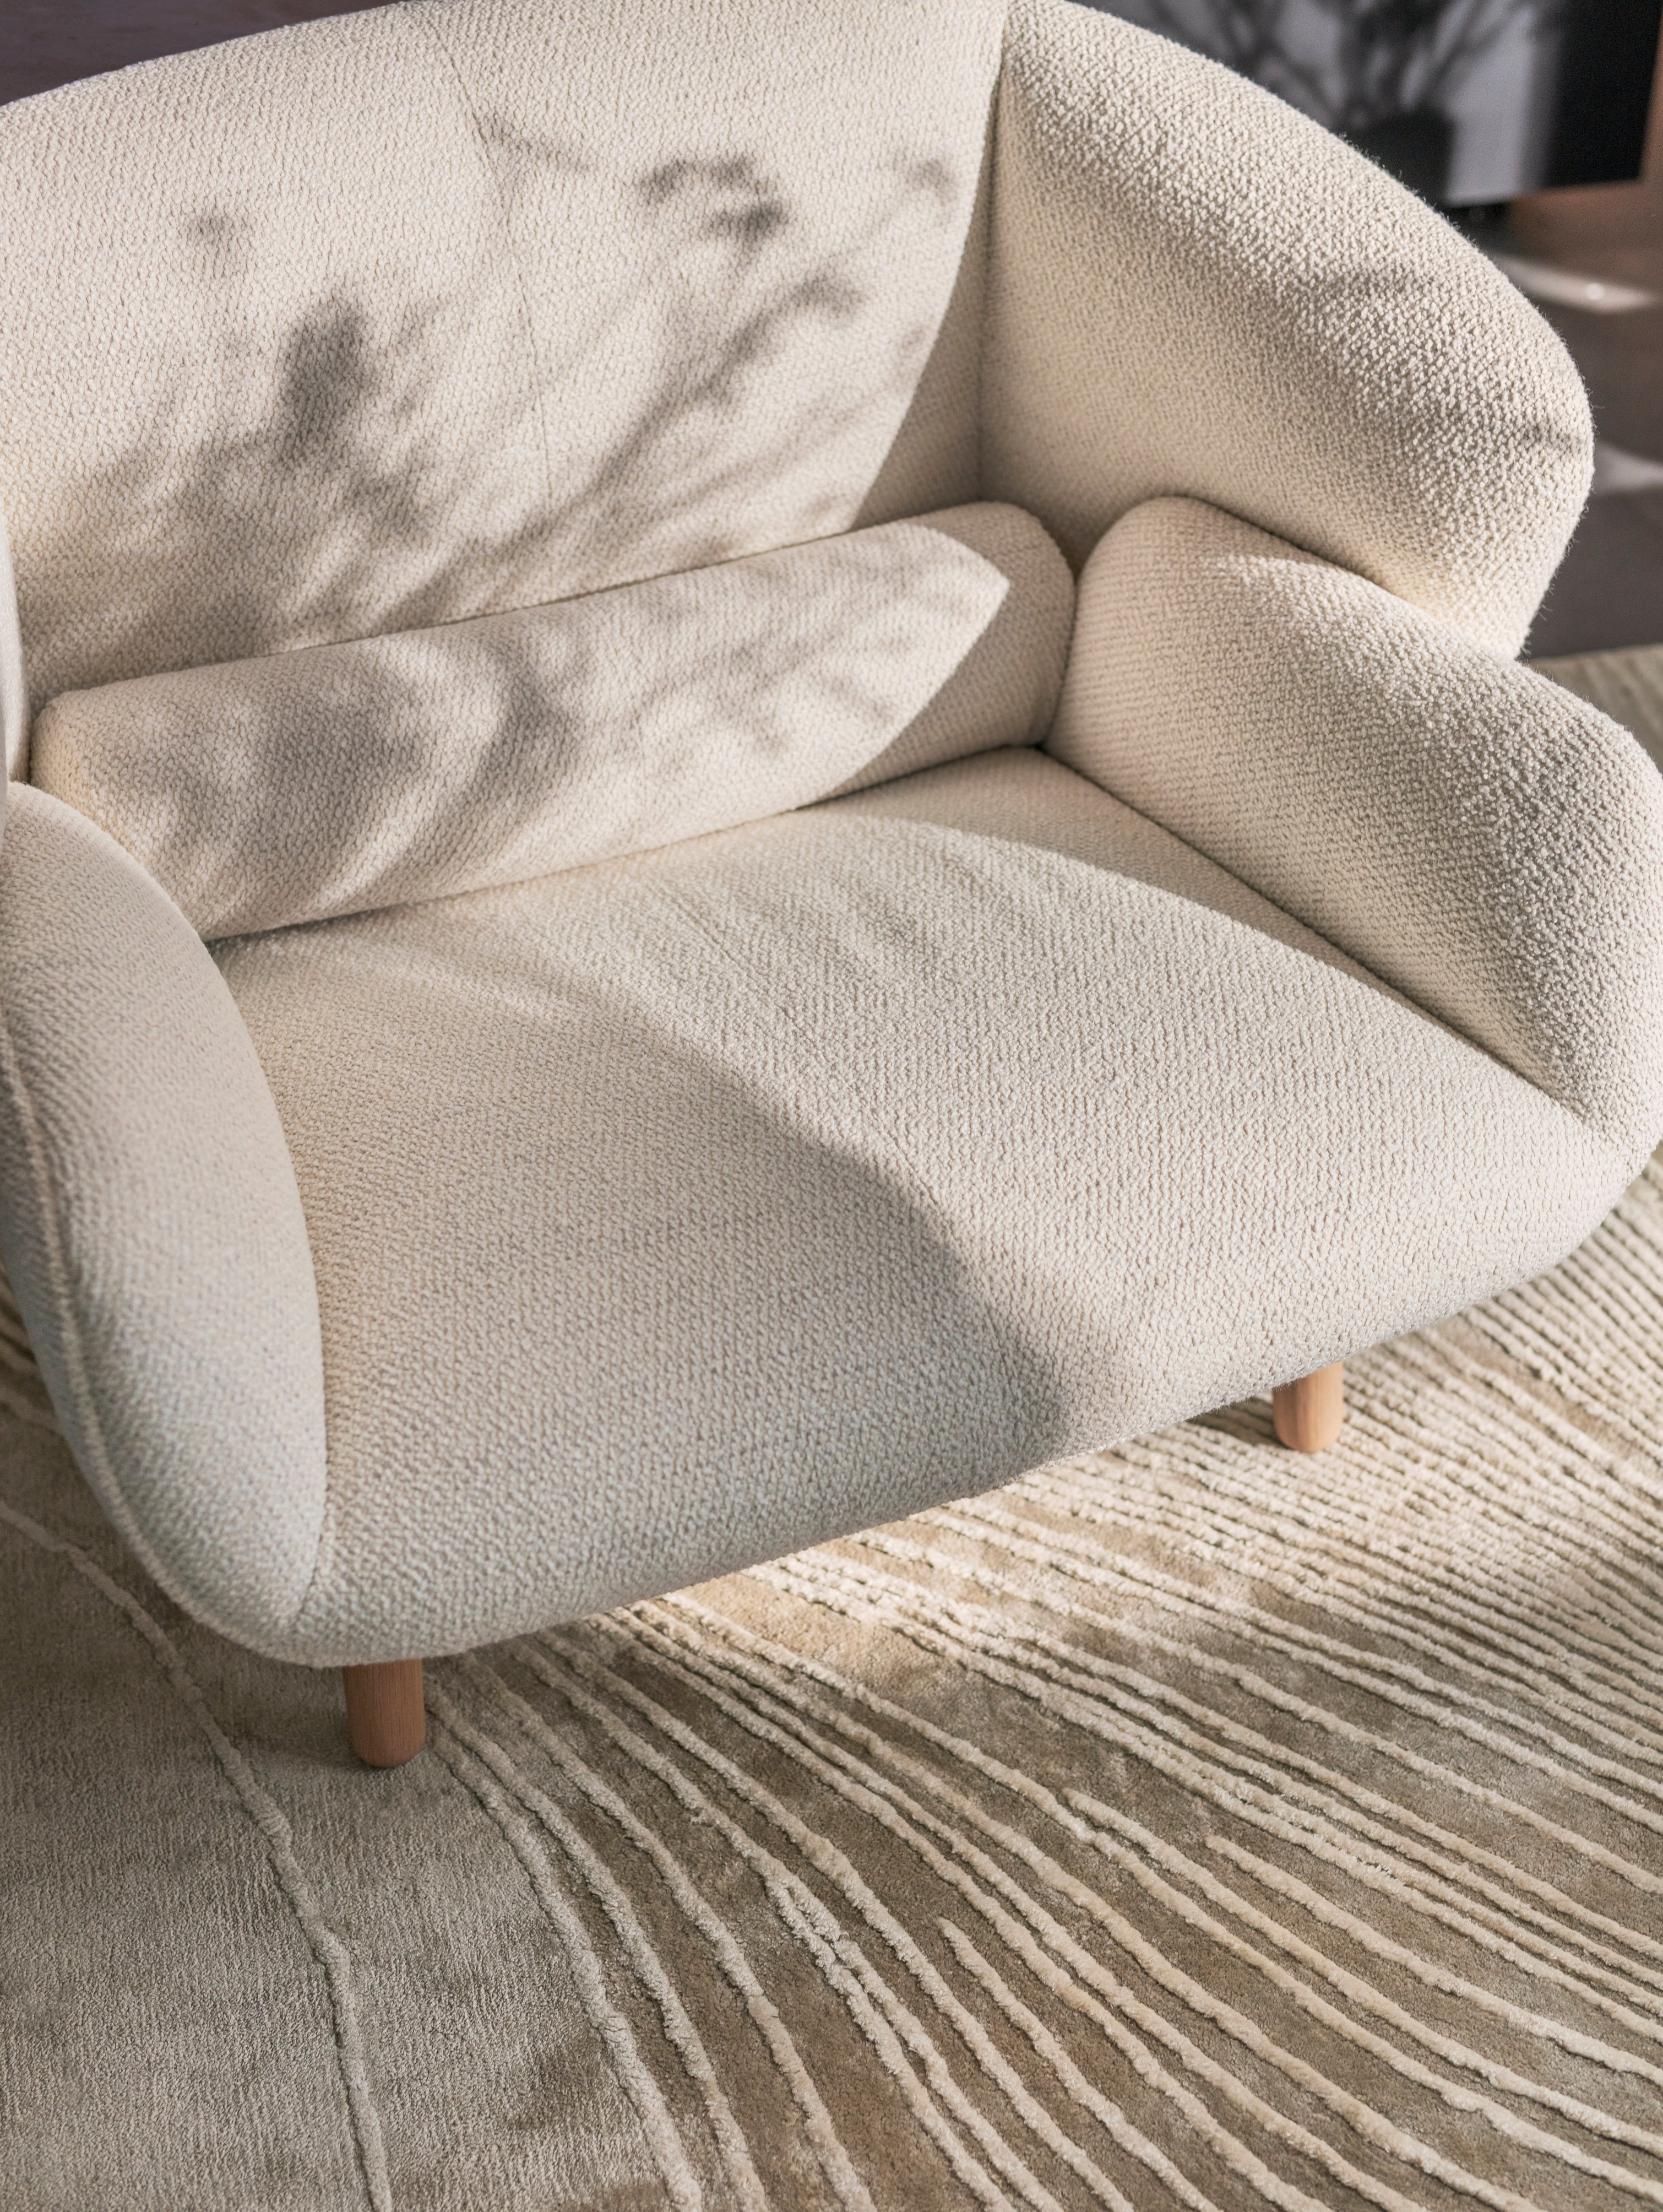 Кресло Fusion с обивкой из ткани Lazio белого цвета в сочетании с ковром Tide серо-белой расцветки.